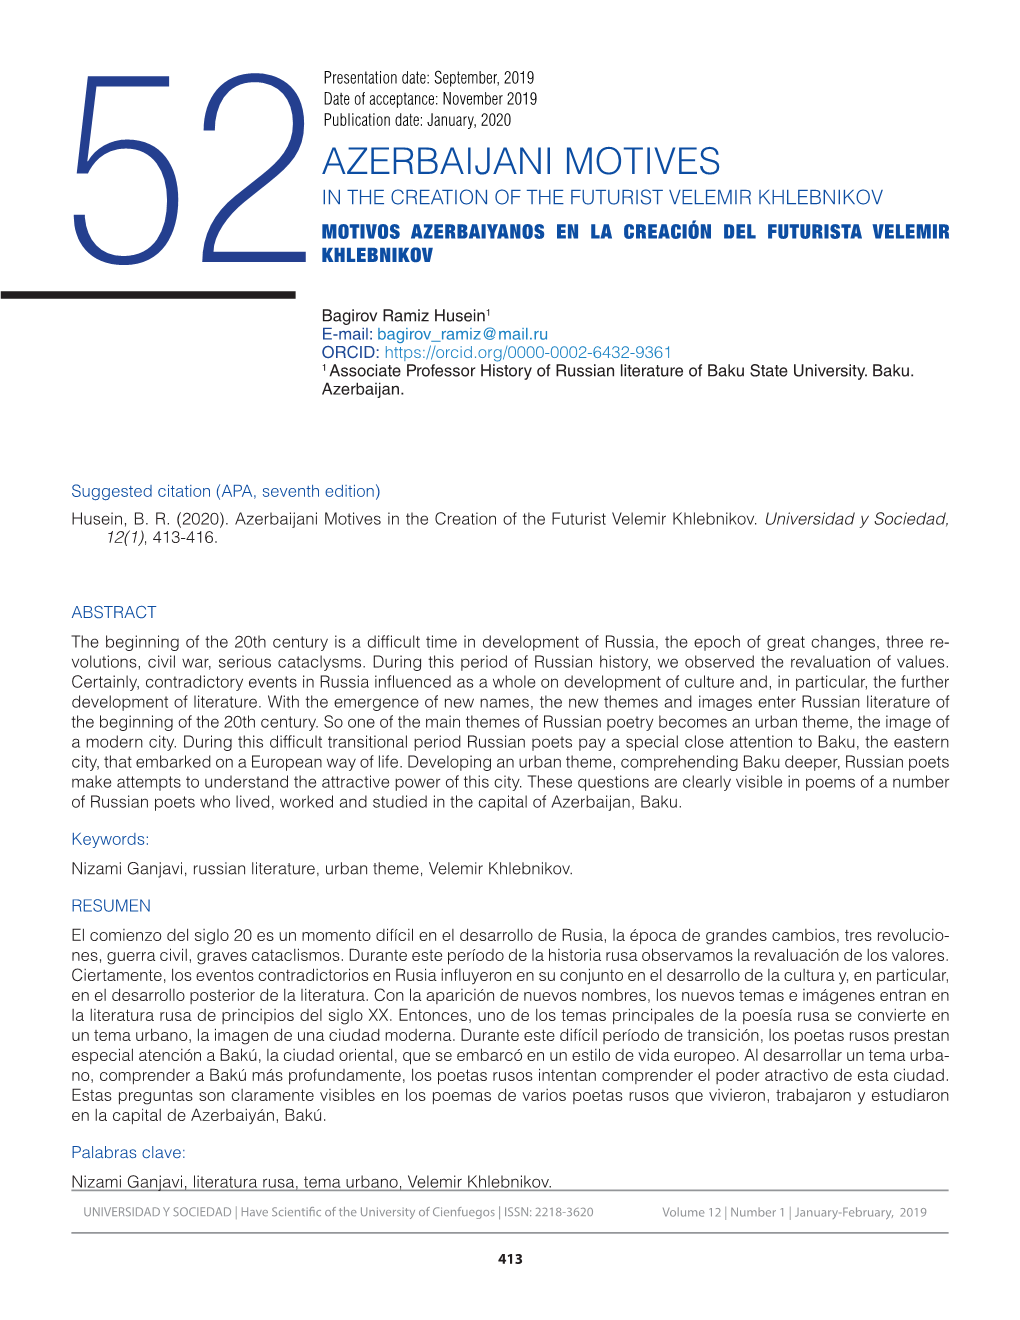 Azerbaijani Motives